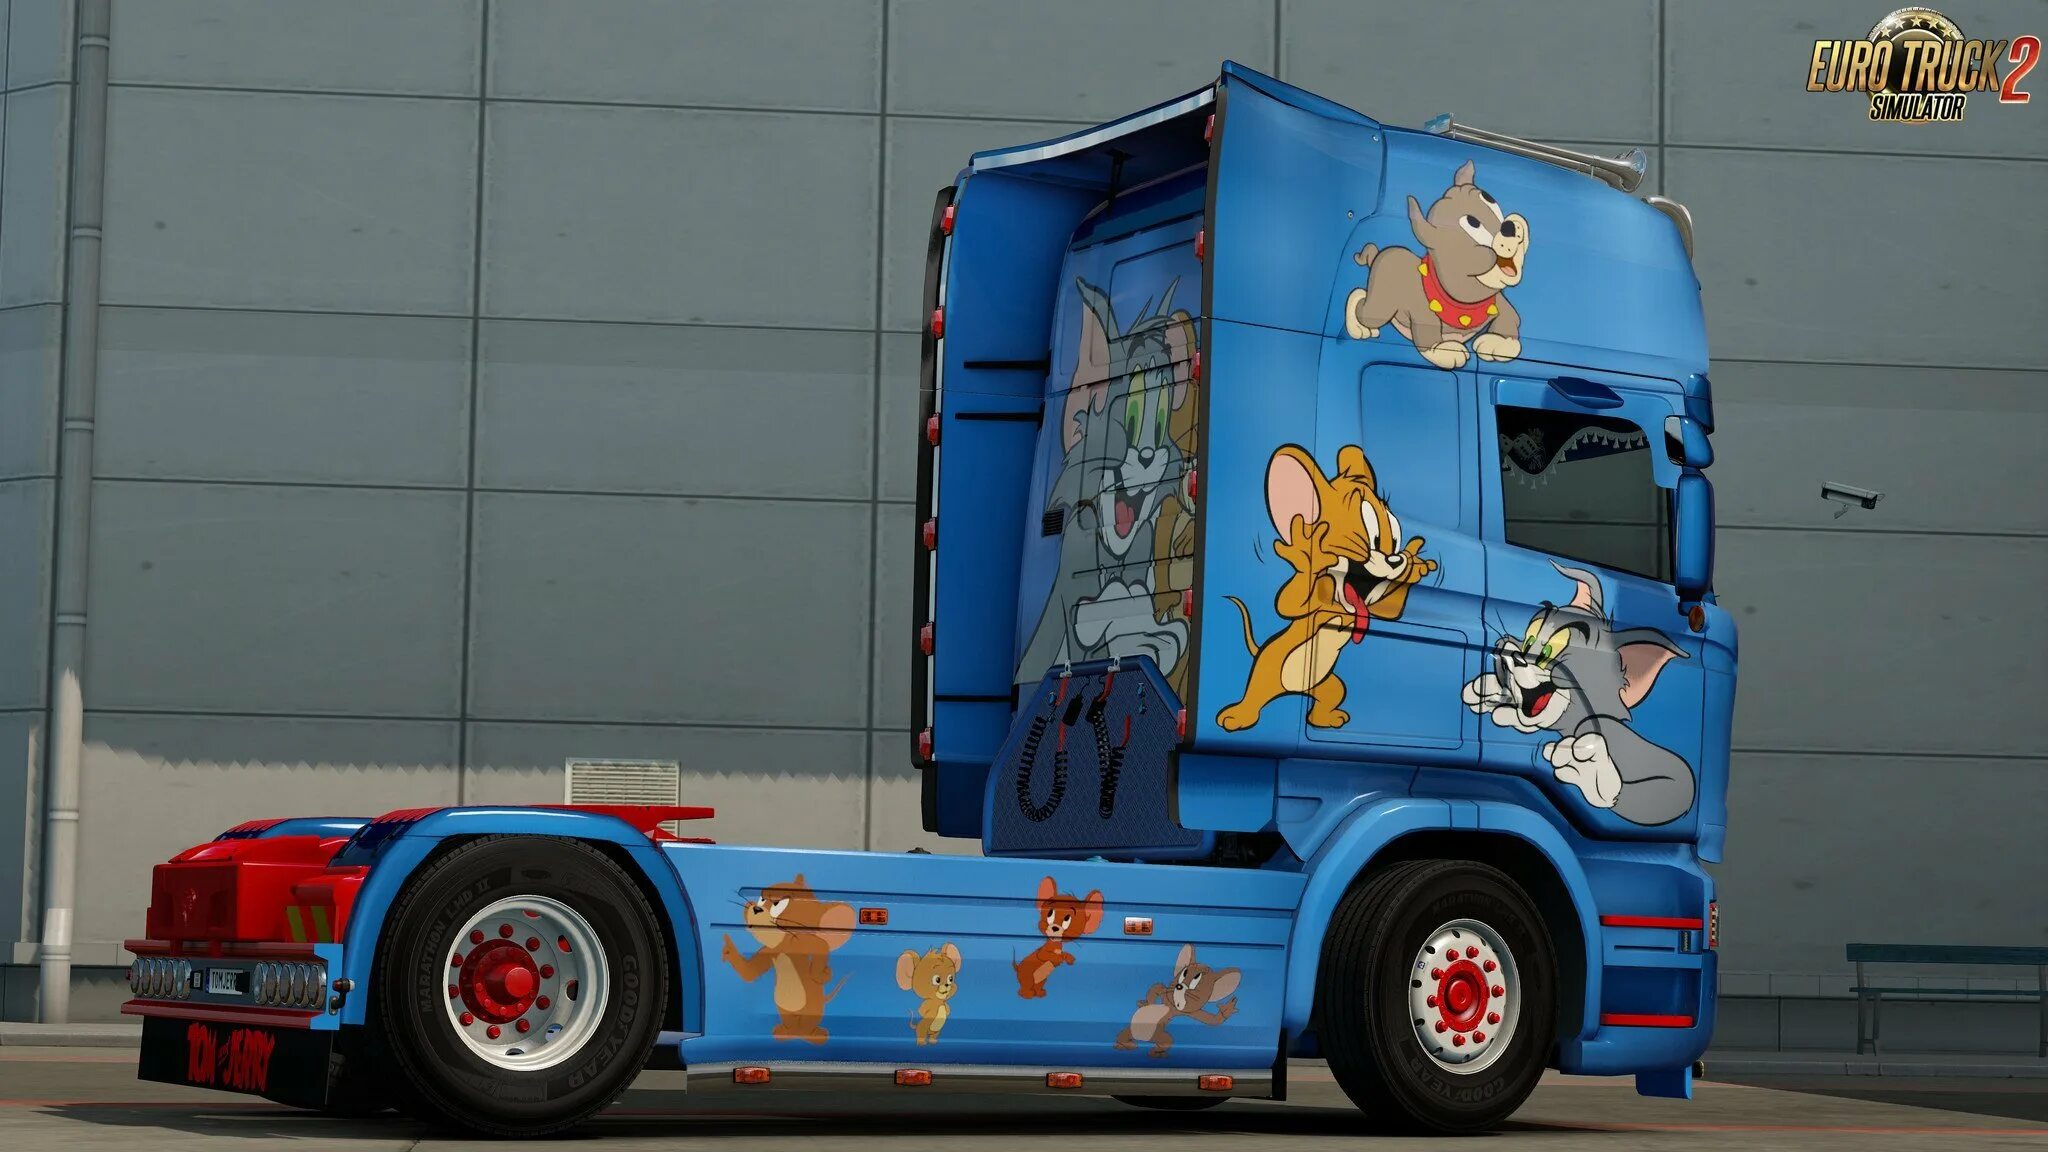 Тачки грузовик Джерри. Машина Тома. Том и Джерри авто.